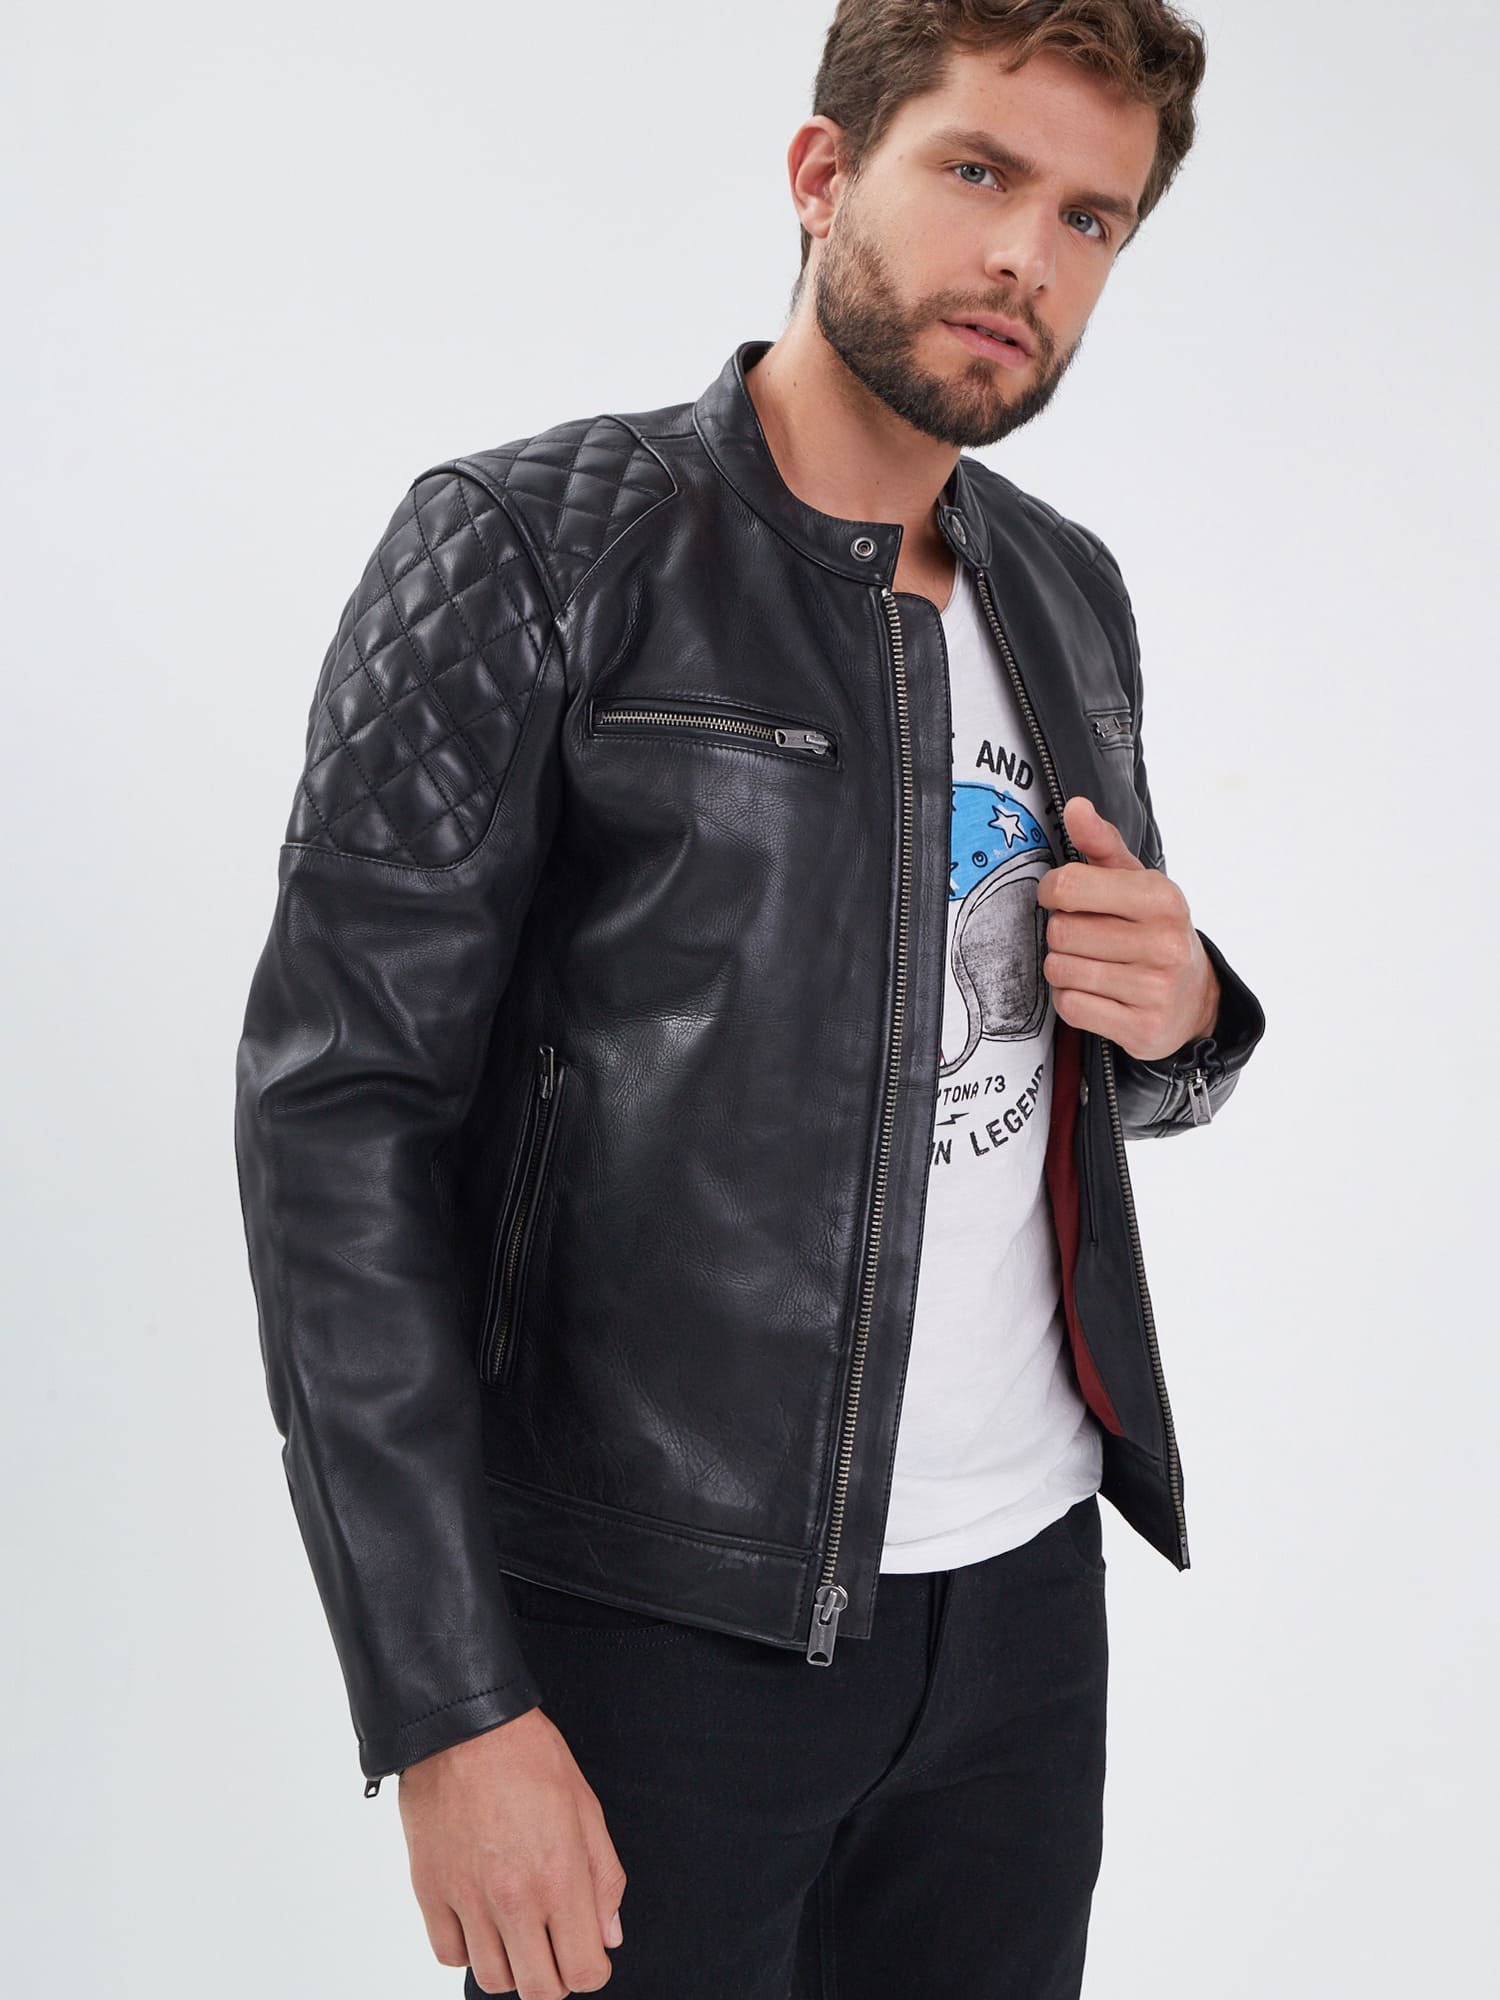 Vakman hulp in de huishouding Middelen Cobalt - Leather moto jacket - Black — D73 USA